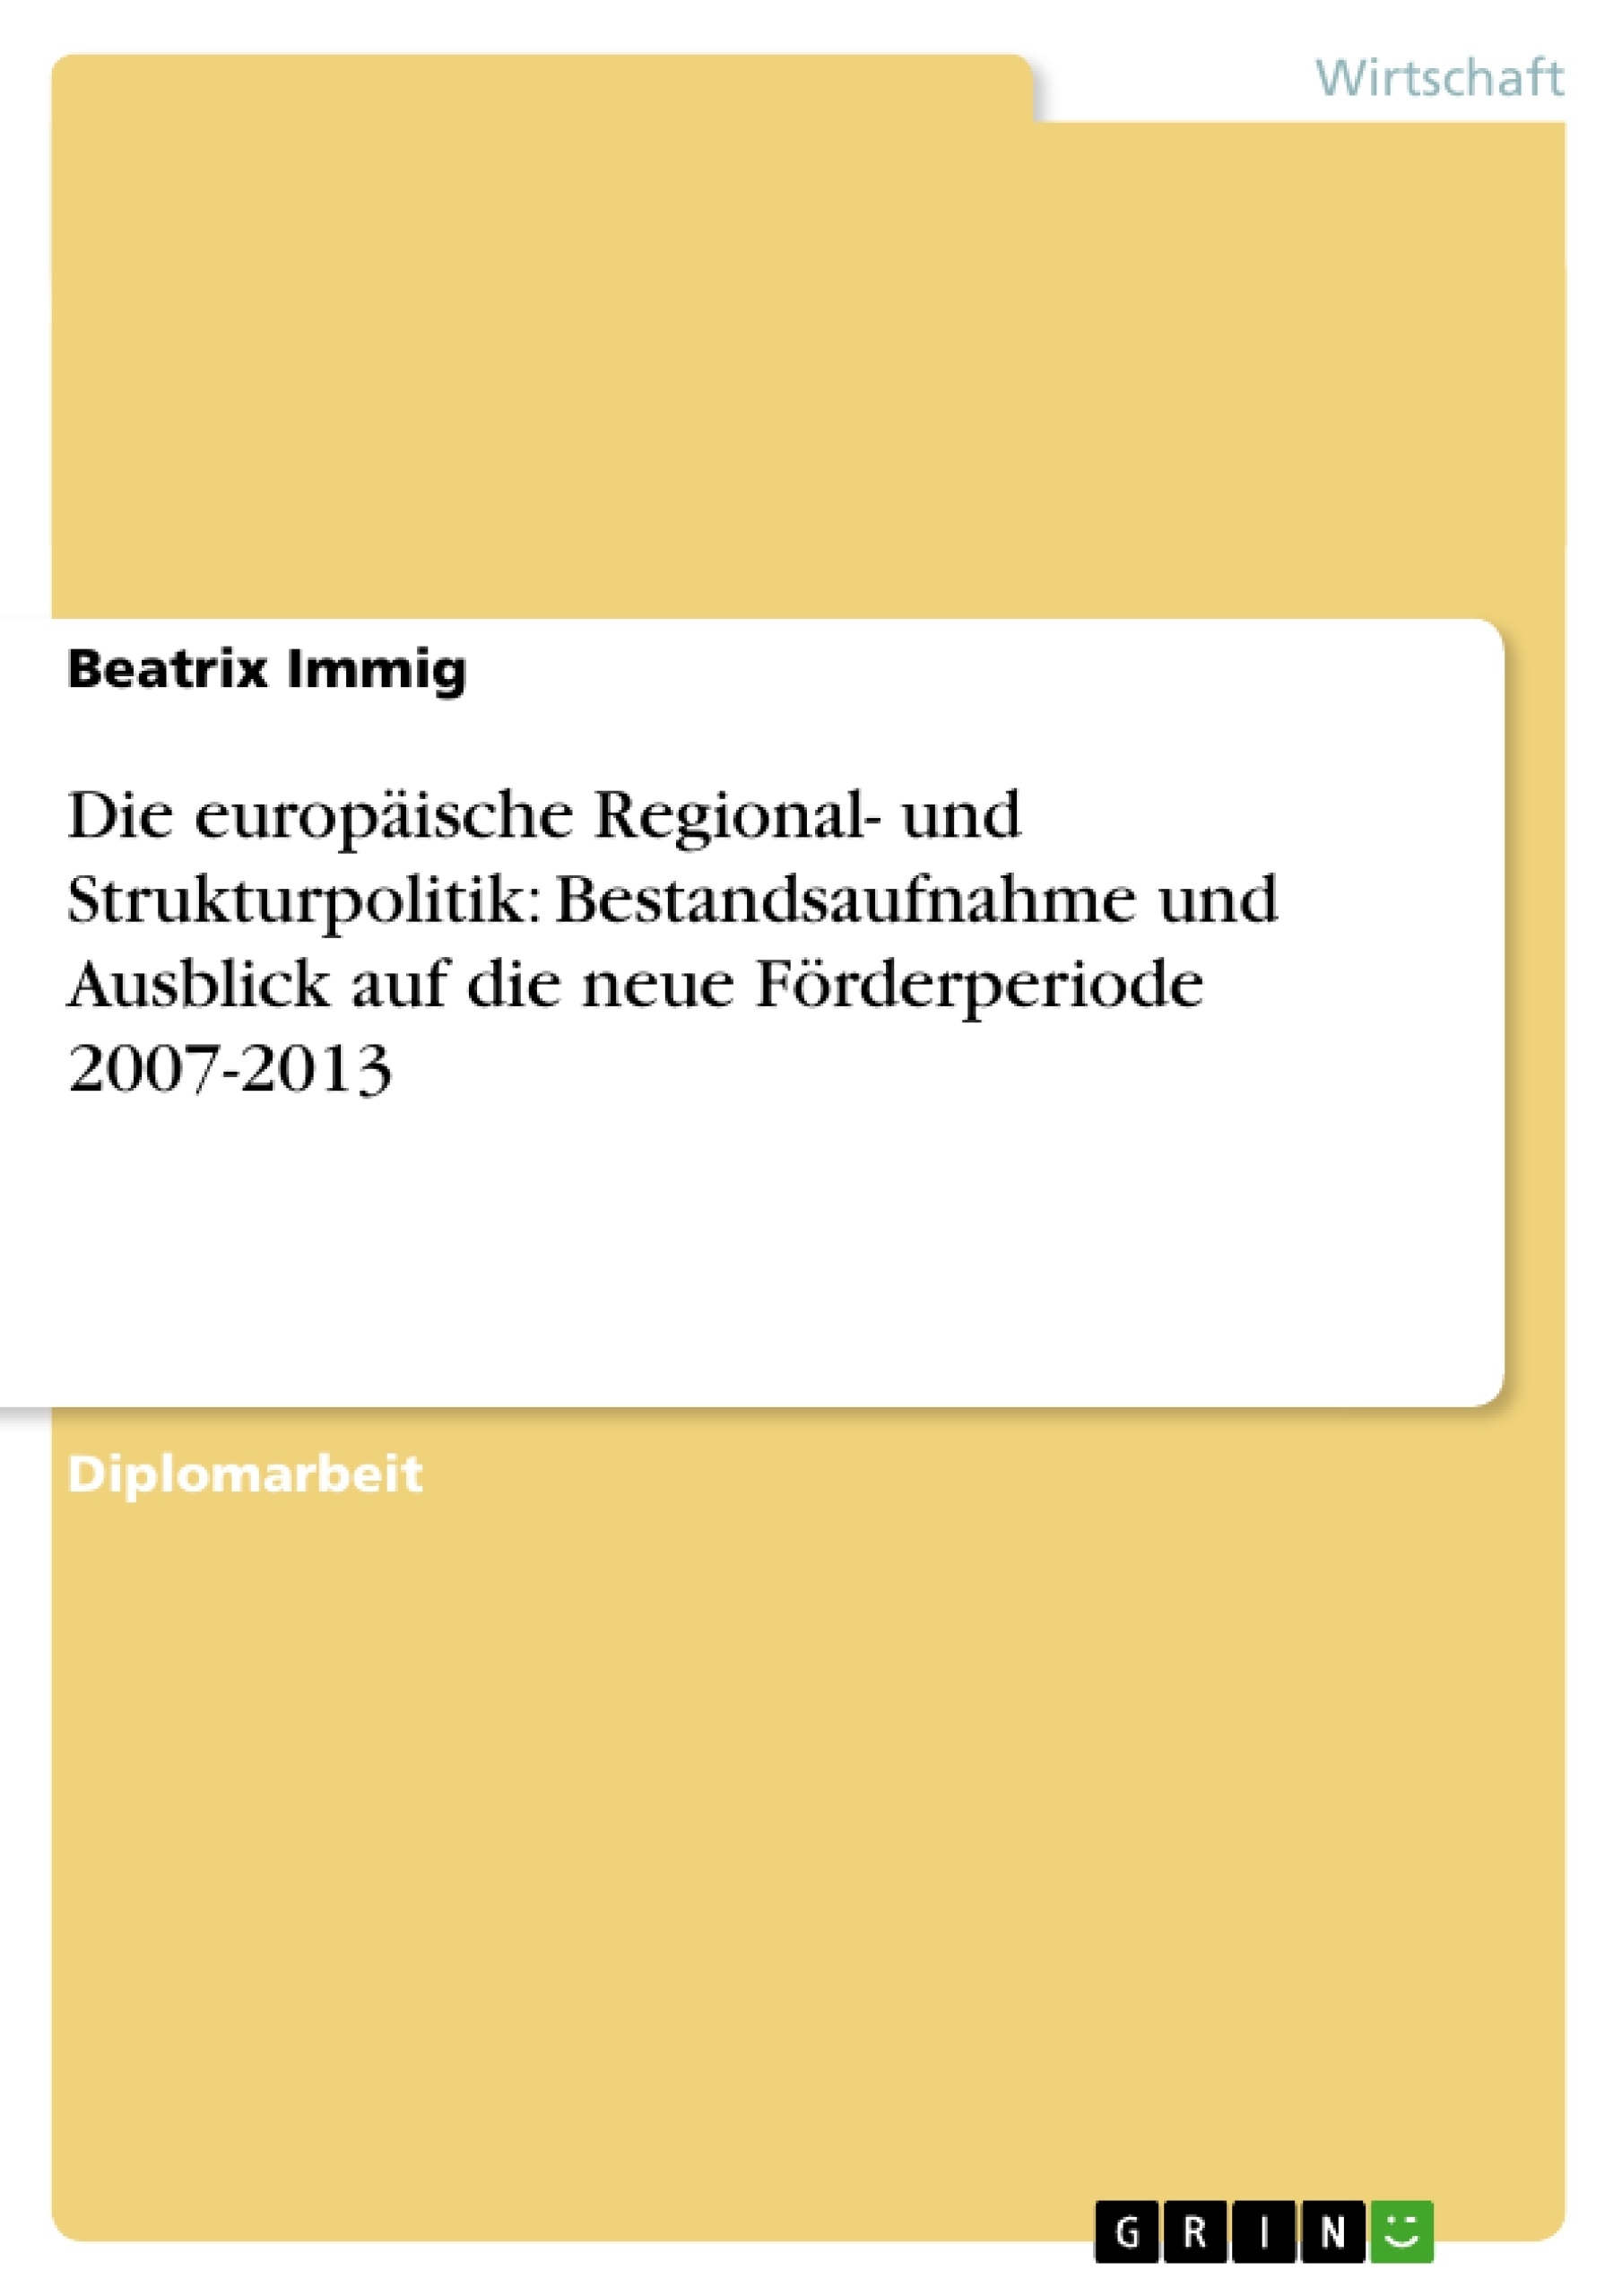 Título: Die europäische Regional- und Strukturpolitik: Bestandsaufnahme und Ausblick auf die neue Förderperiode 2007-2013